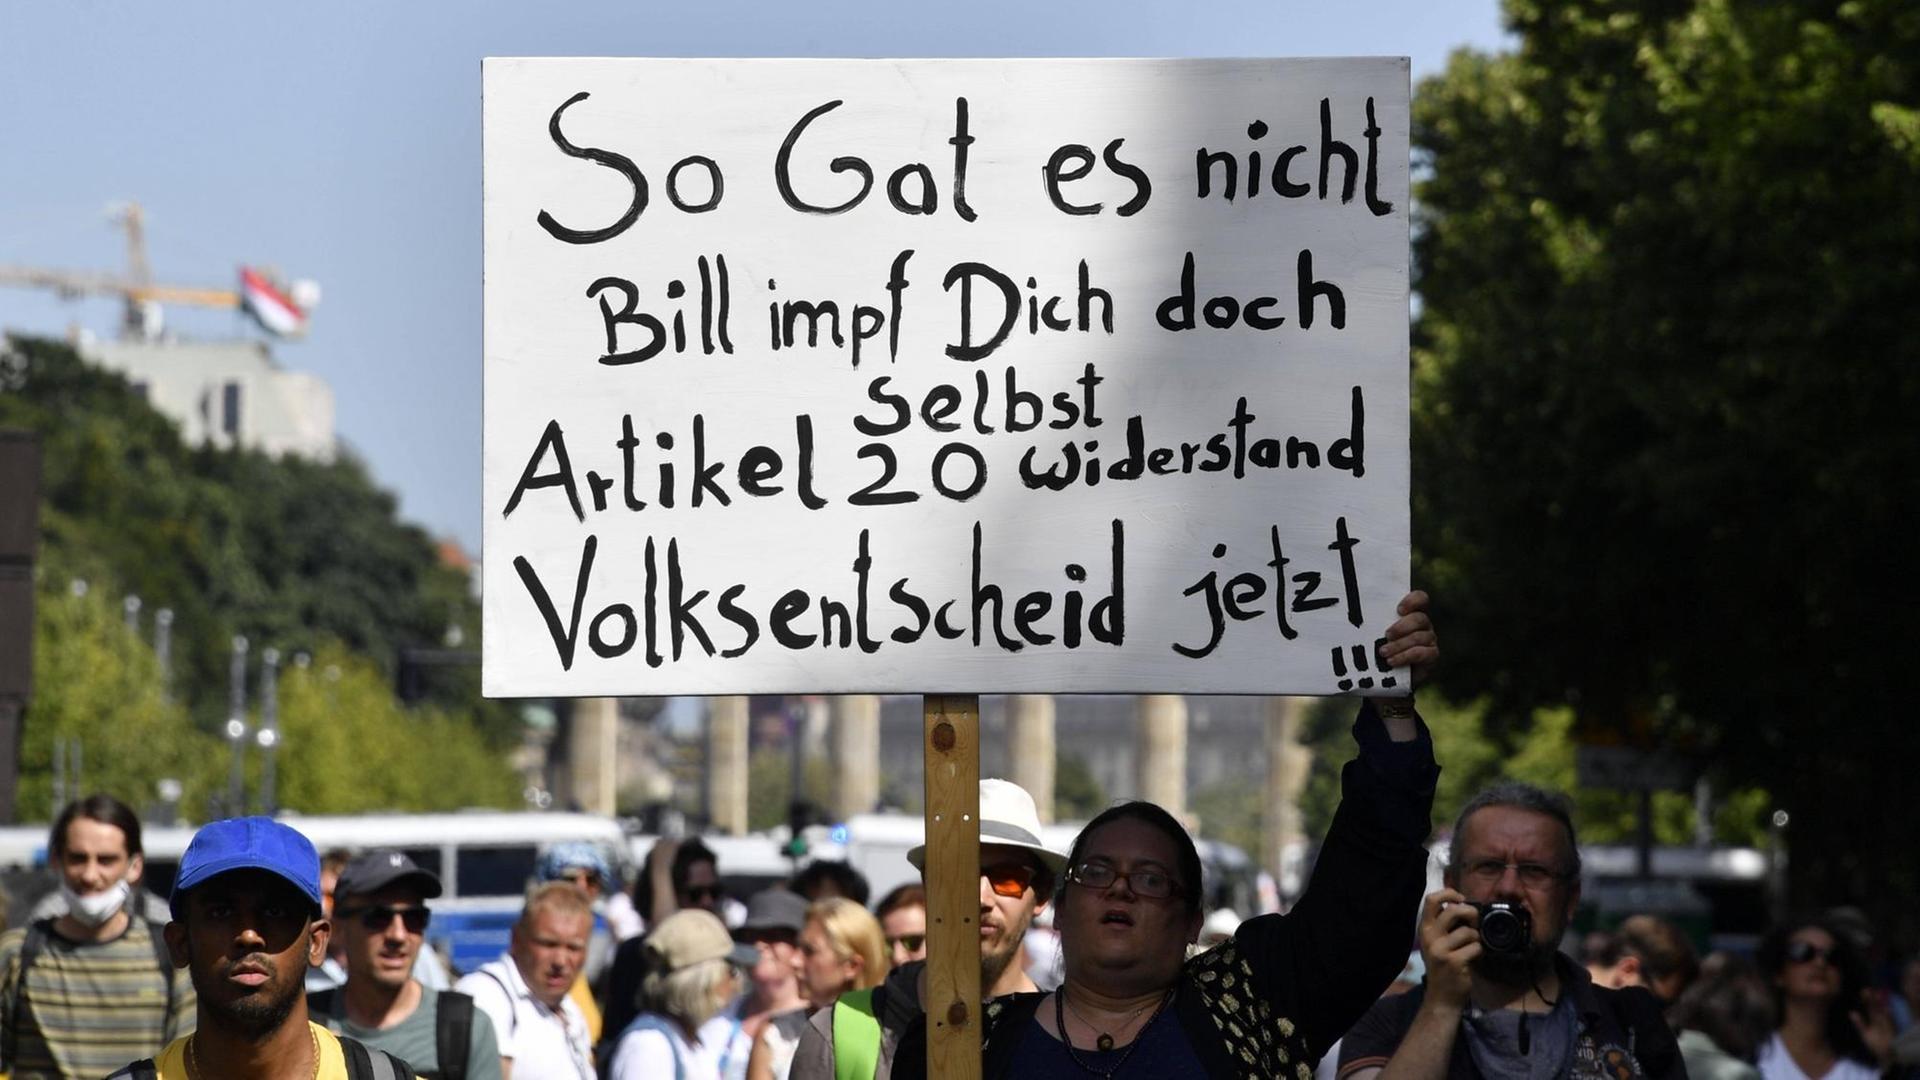 Eine Demonstrantin hält ein Schild hoch mit der Aufschrift: "So Gates nicht. Bill impf Dich doch selbst. Artikel 20. Widerstand. Volksentscheid jetzt !!!"